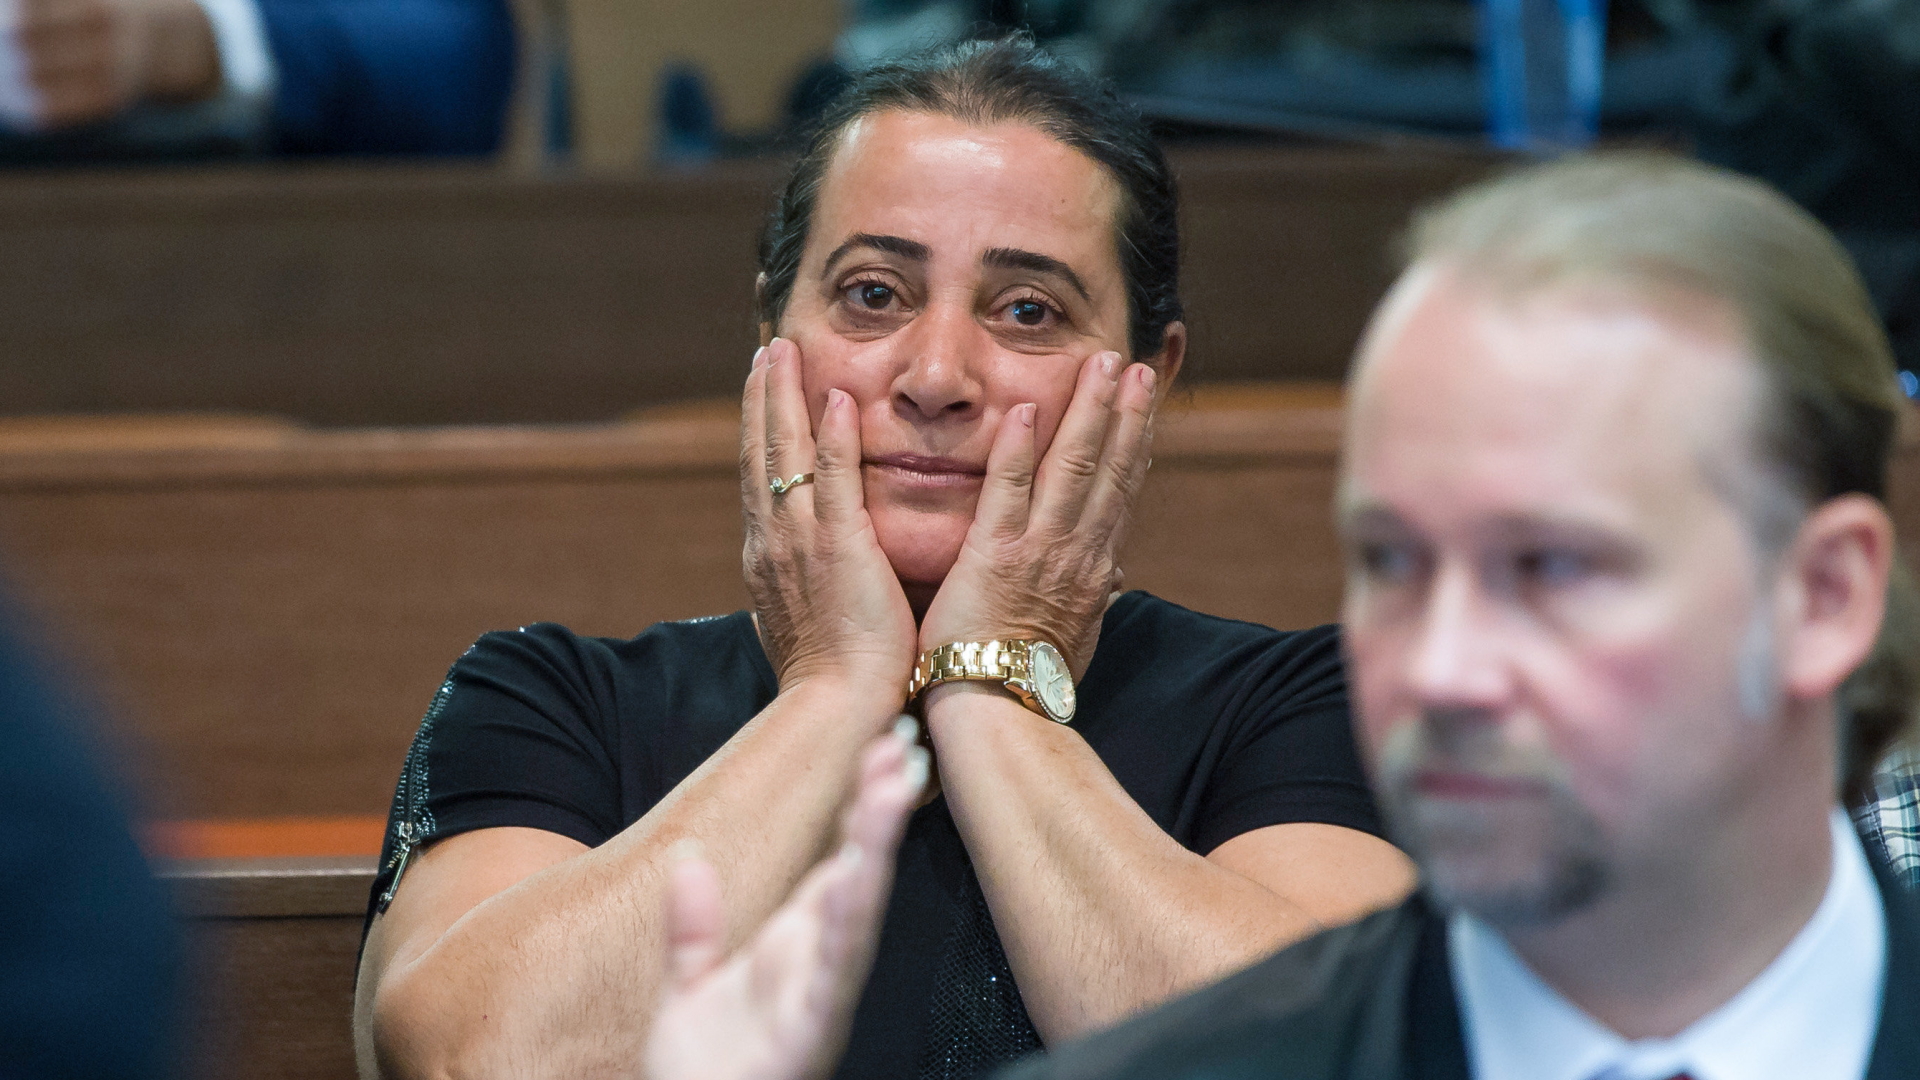 lif Kubasik, Ehefrau des NSU-Opfers Mehmet Kubasik, sitzt im Oberlandesgericht.